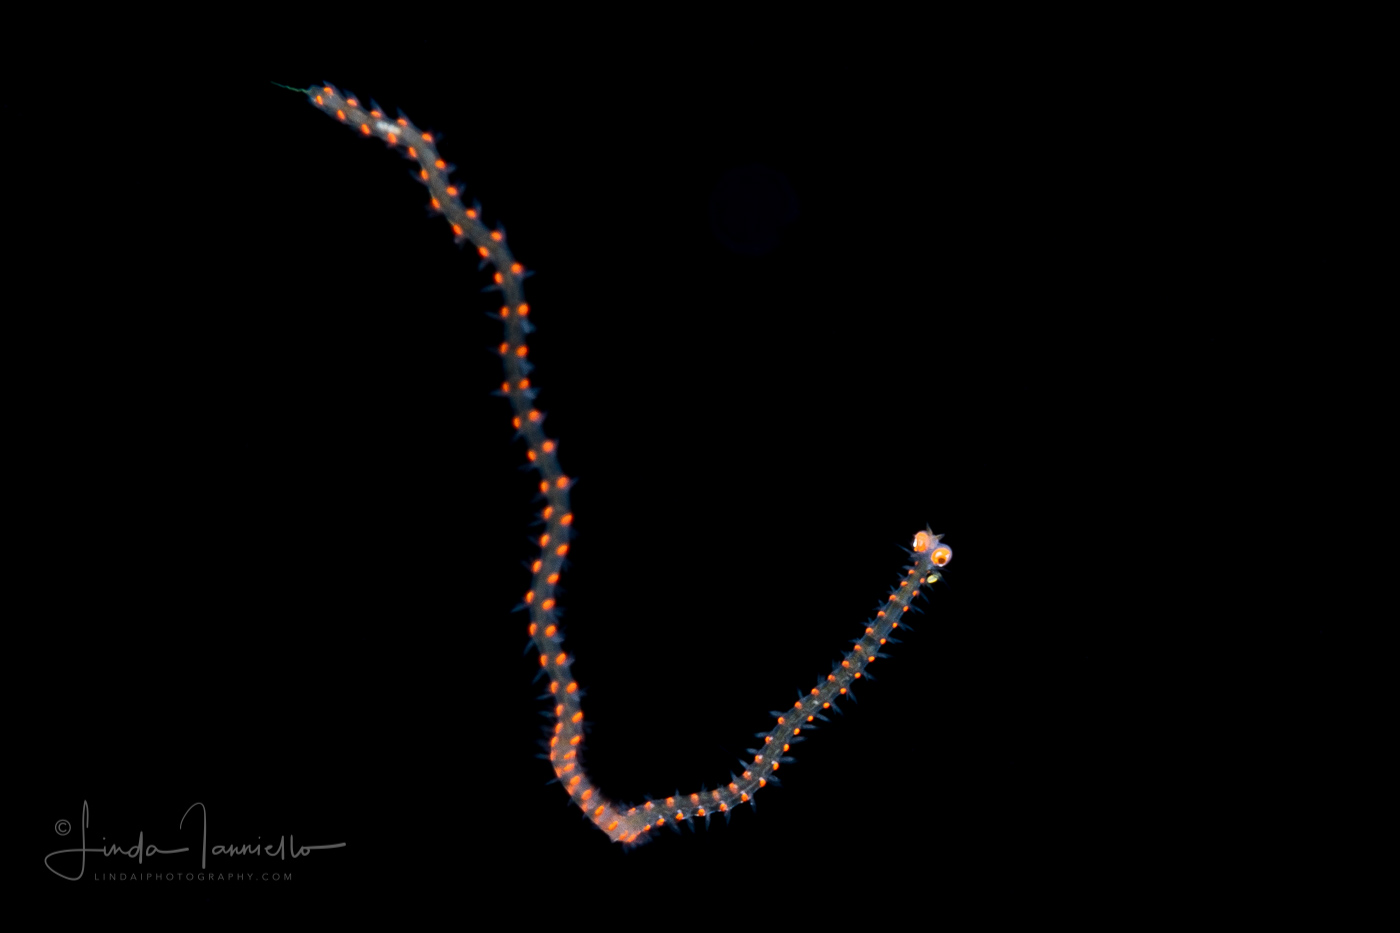 Pelagic Worm - Alciopidae Family